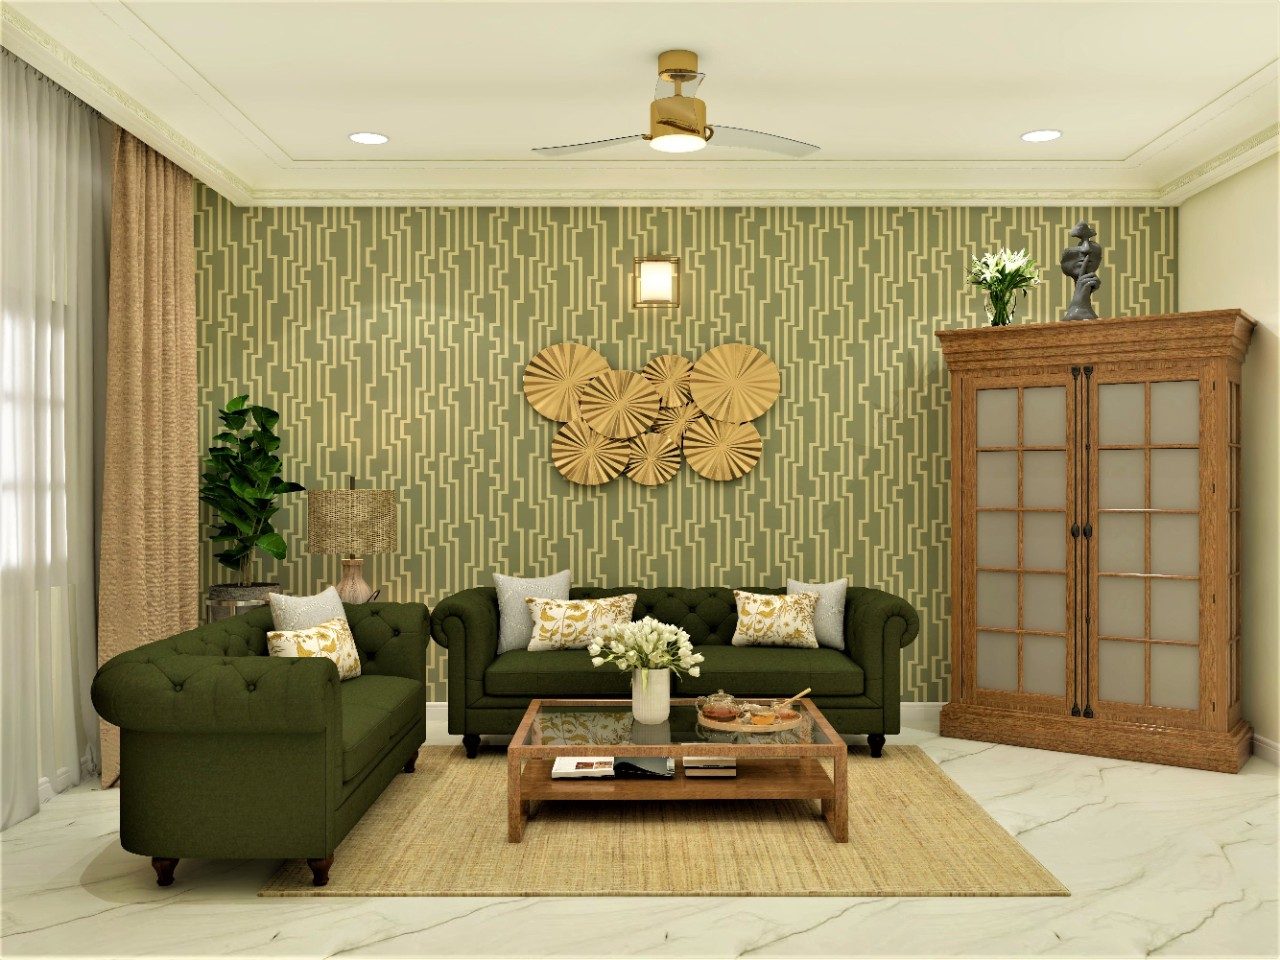 Drawing Room Interior Design Ideas | Blog | DesignCafe-saigonsouth.com.vn